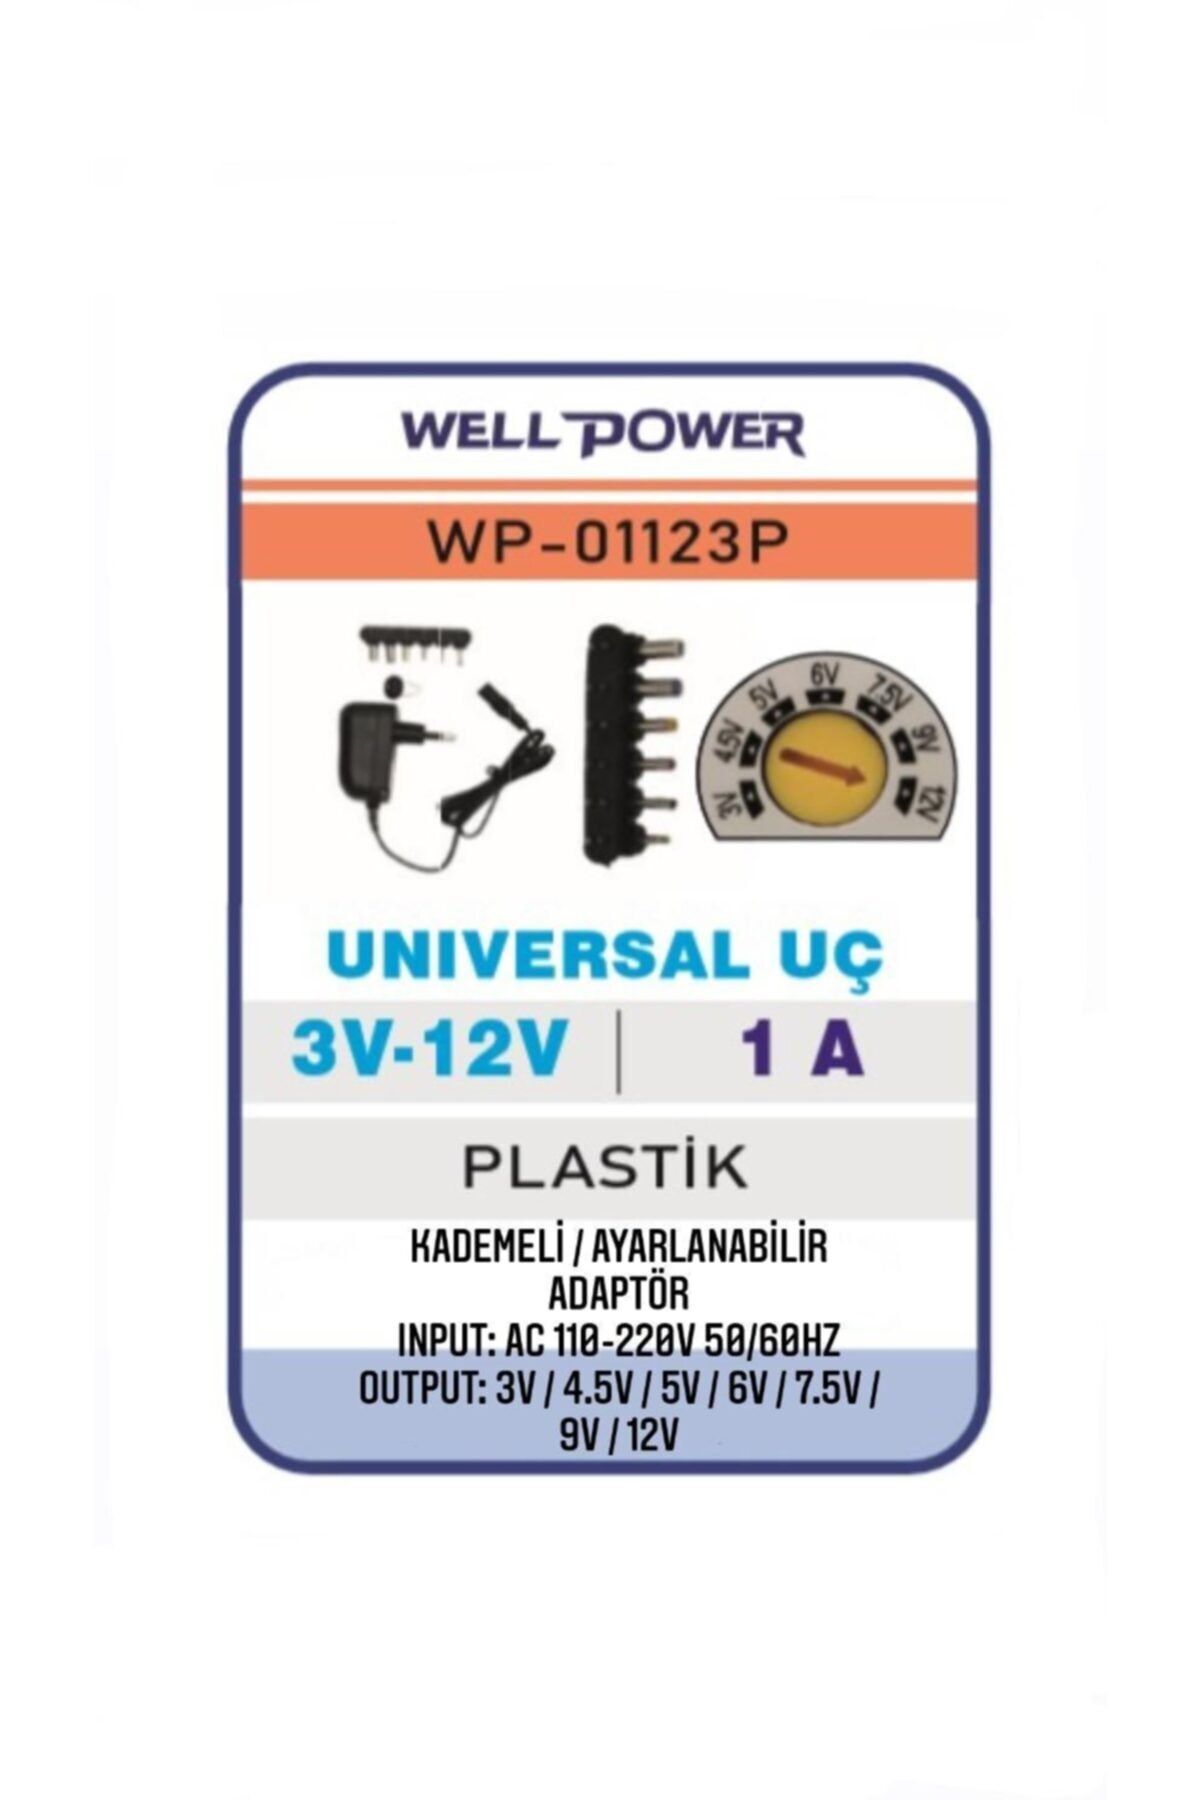 WELL POWER 12w 3v-12v Adaptör 3-12 Volt 1 Amper Unıversal Uç Kademeli/ayarlanabilir Adaptör Wellpower Wp-01123p